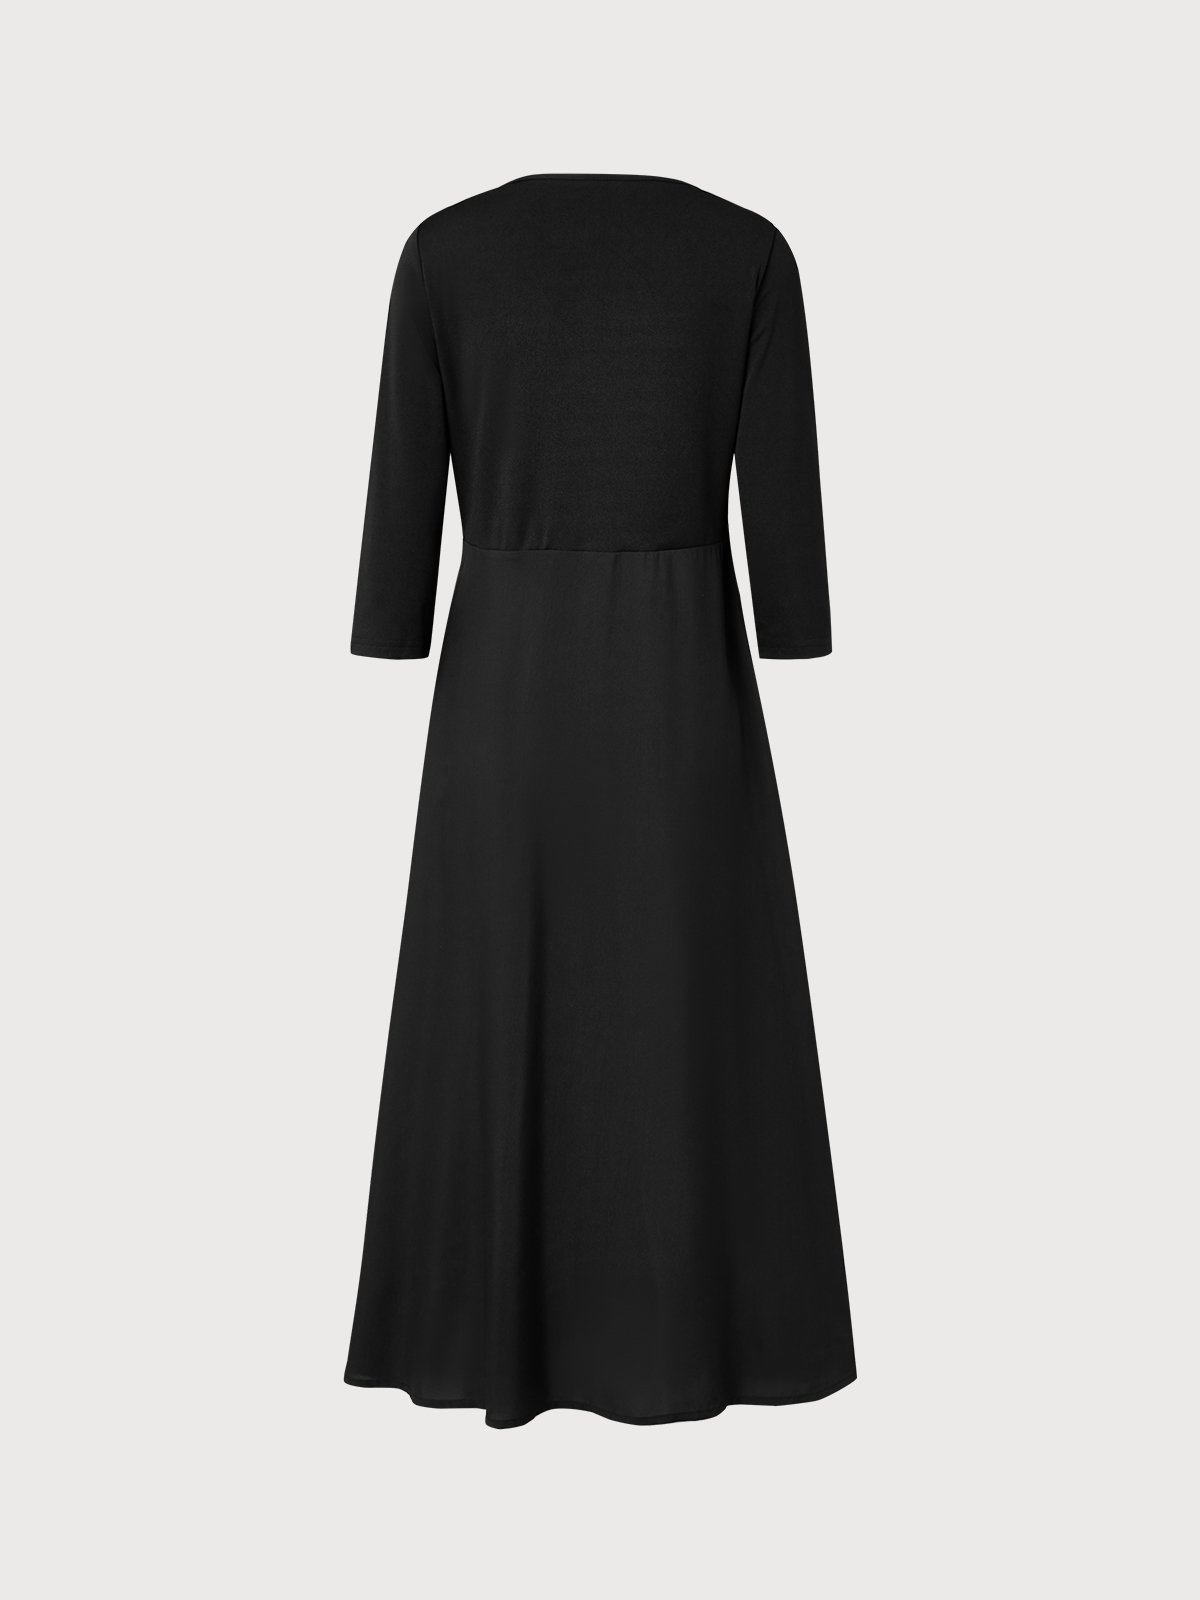 Elegant Black V-Neck Slim Fit Knit Dress | justfashionnow